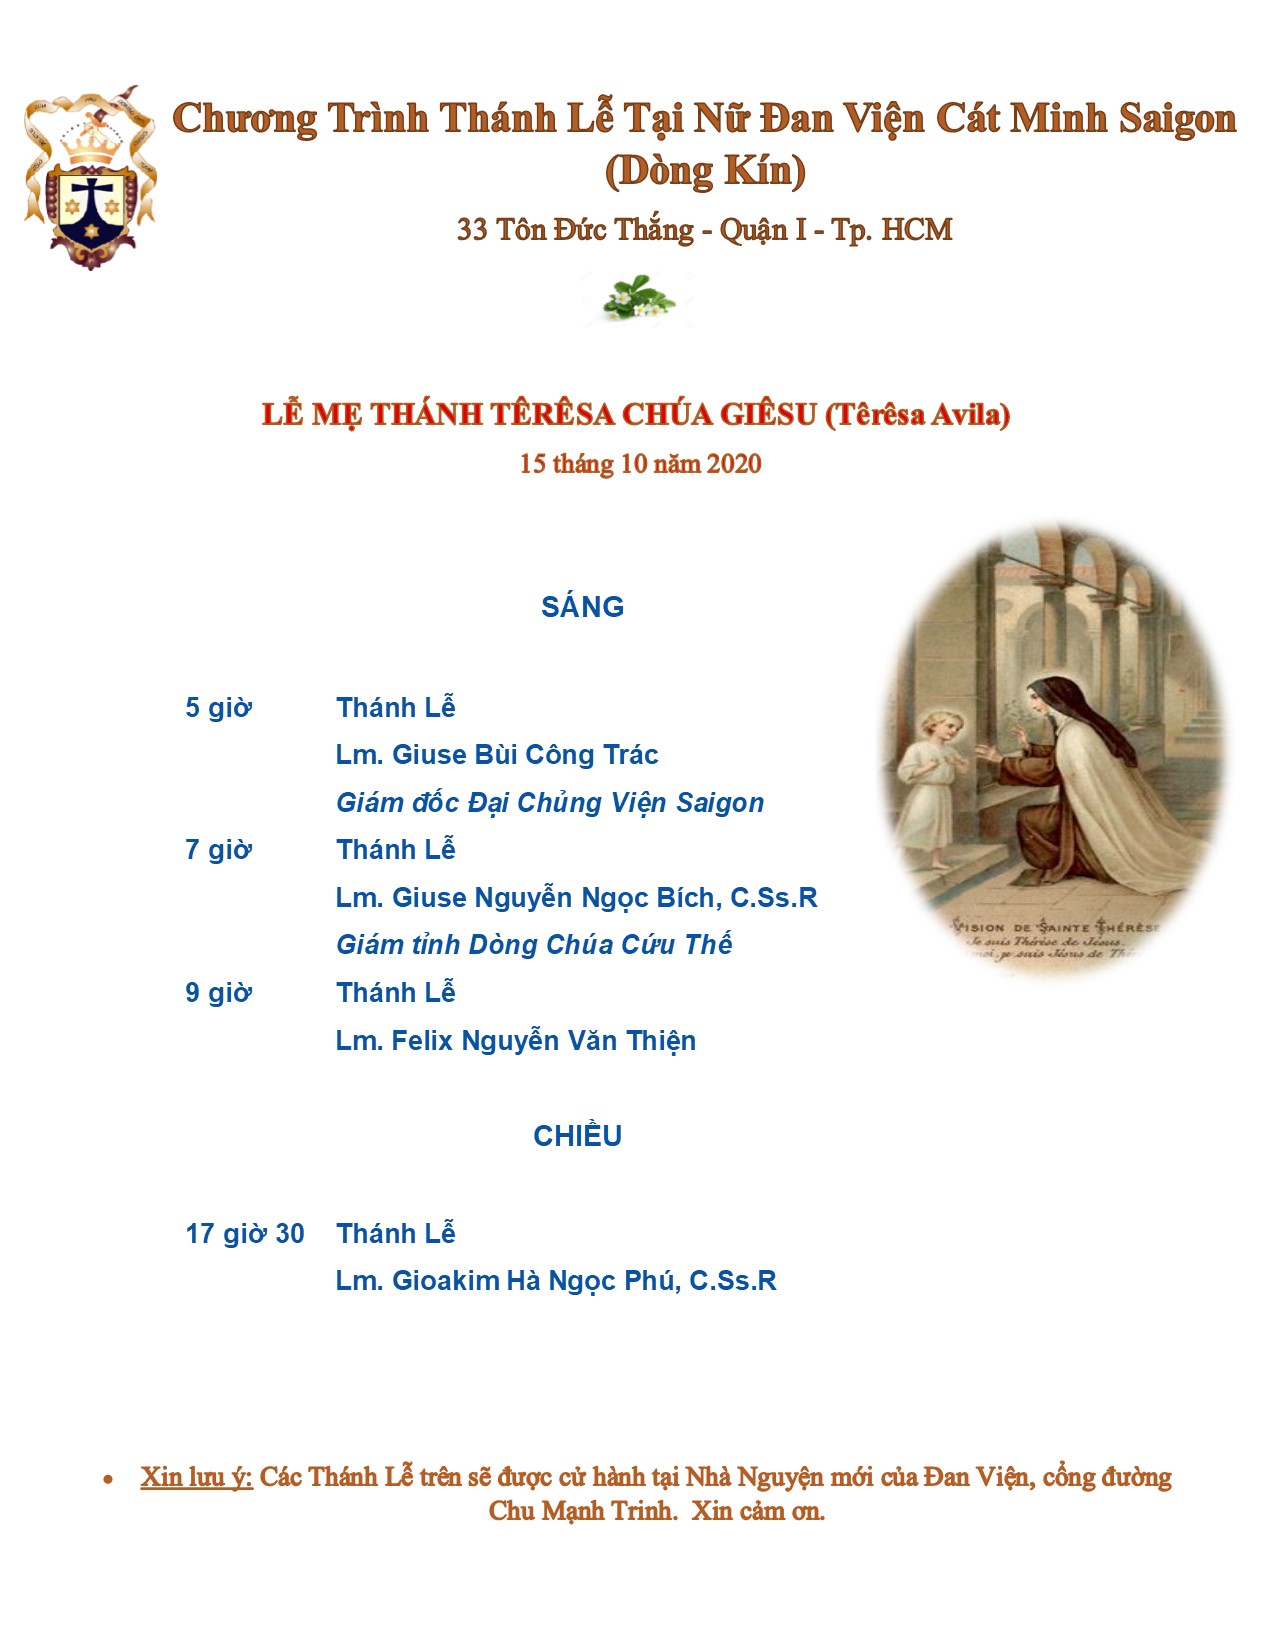 Đan viện Cát Minh Sài Gòn: Chương trình thánh lễ ngày 15-10-2020